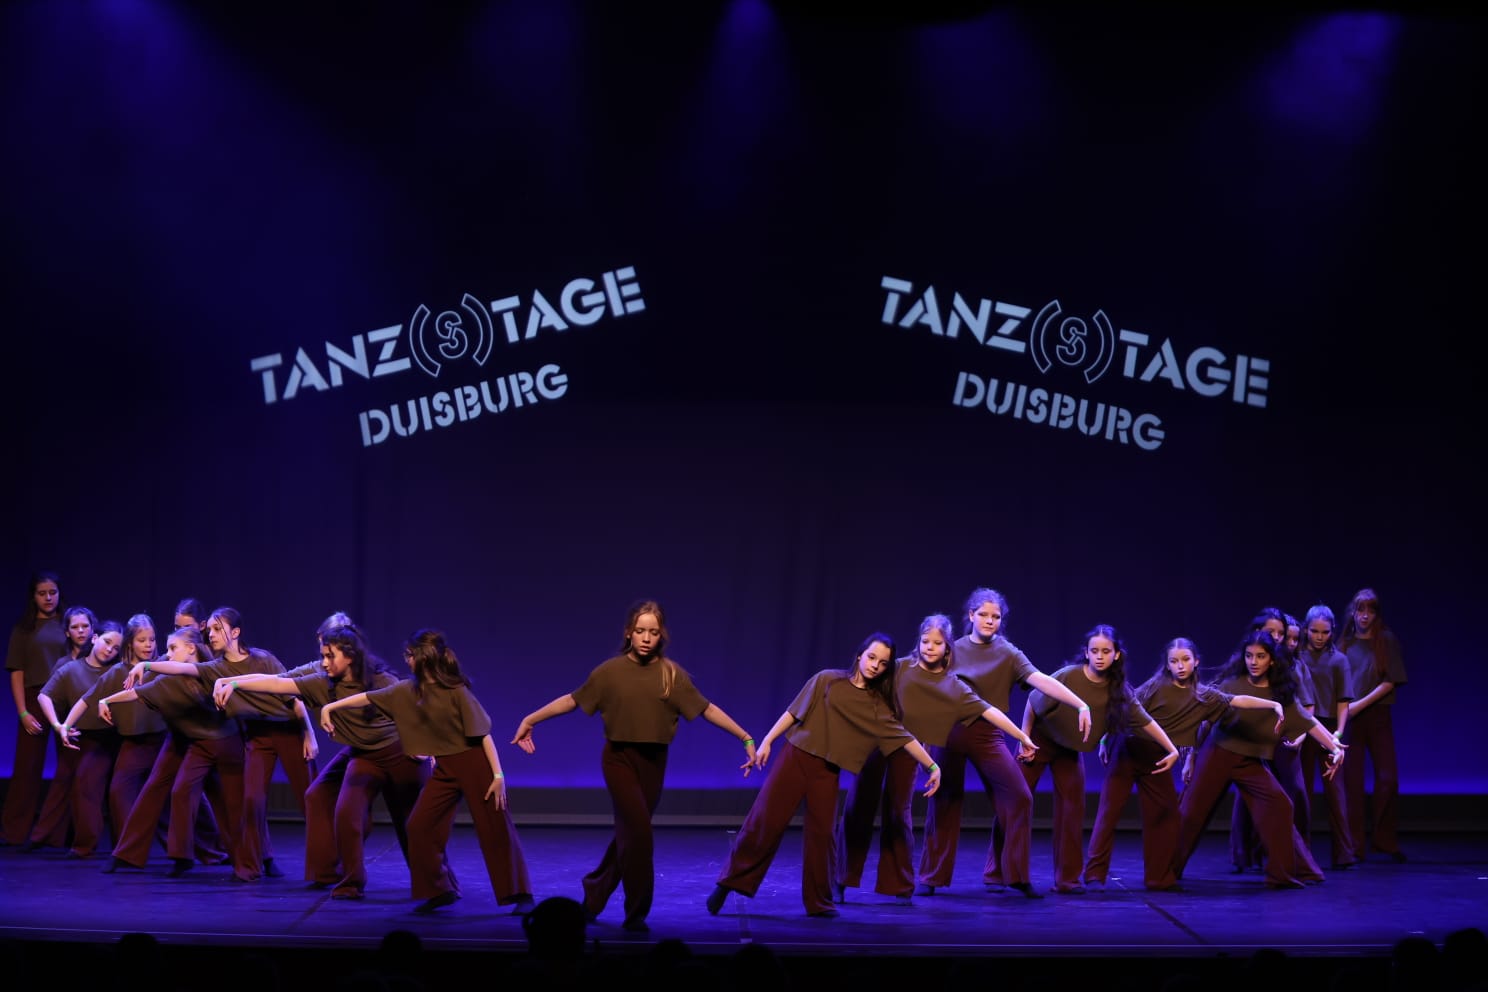 Tanz AG 1